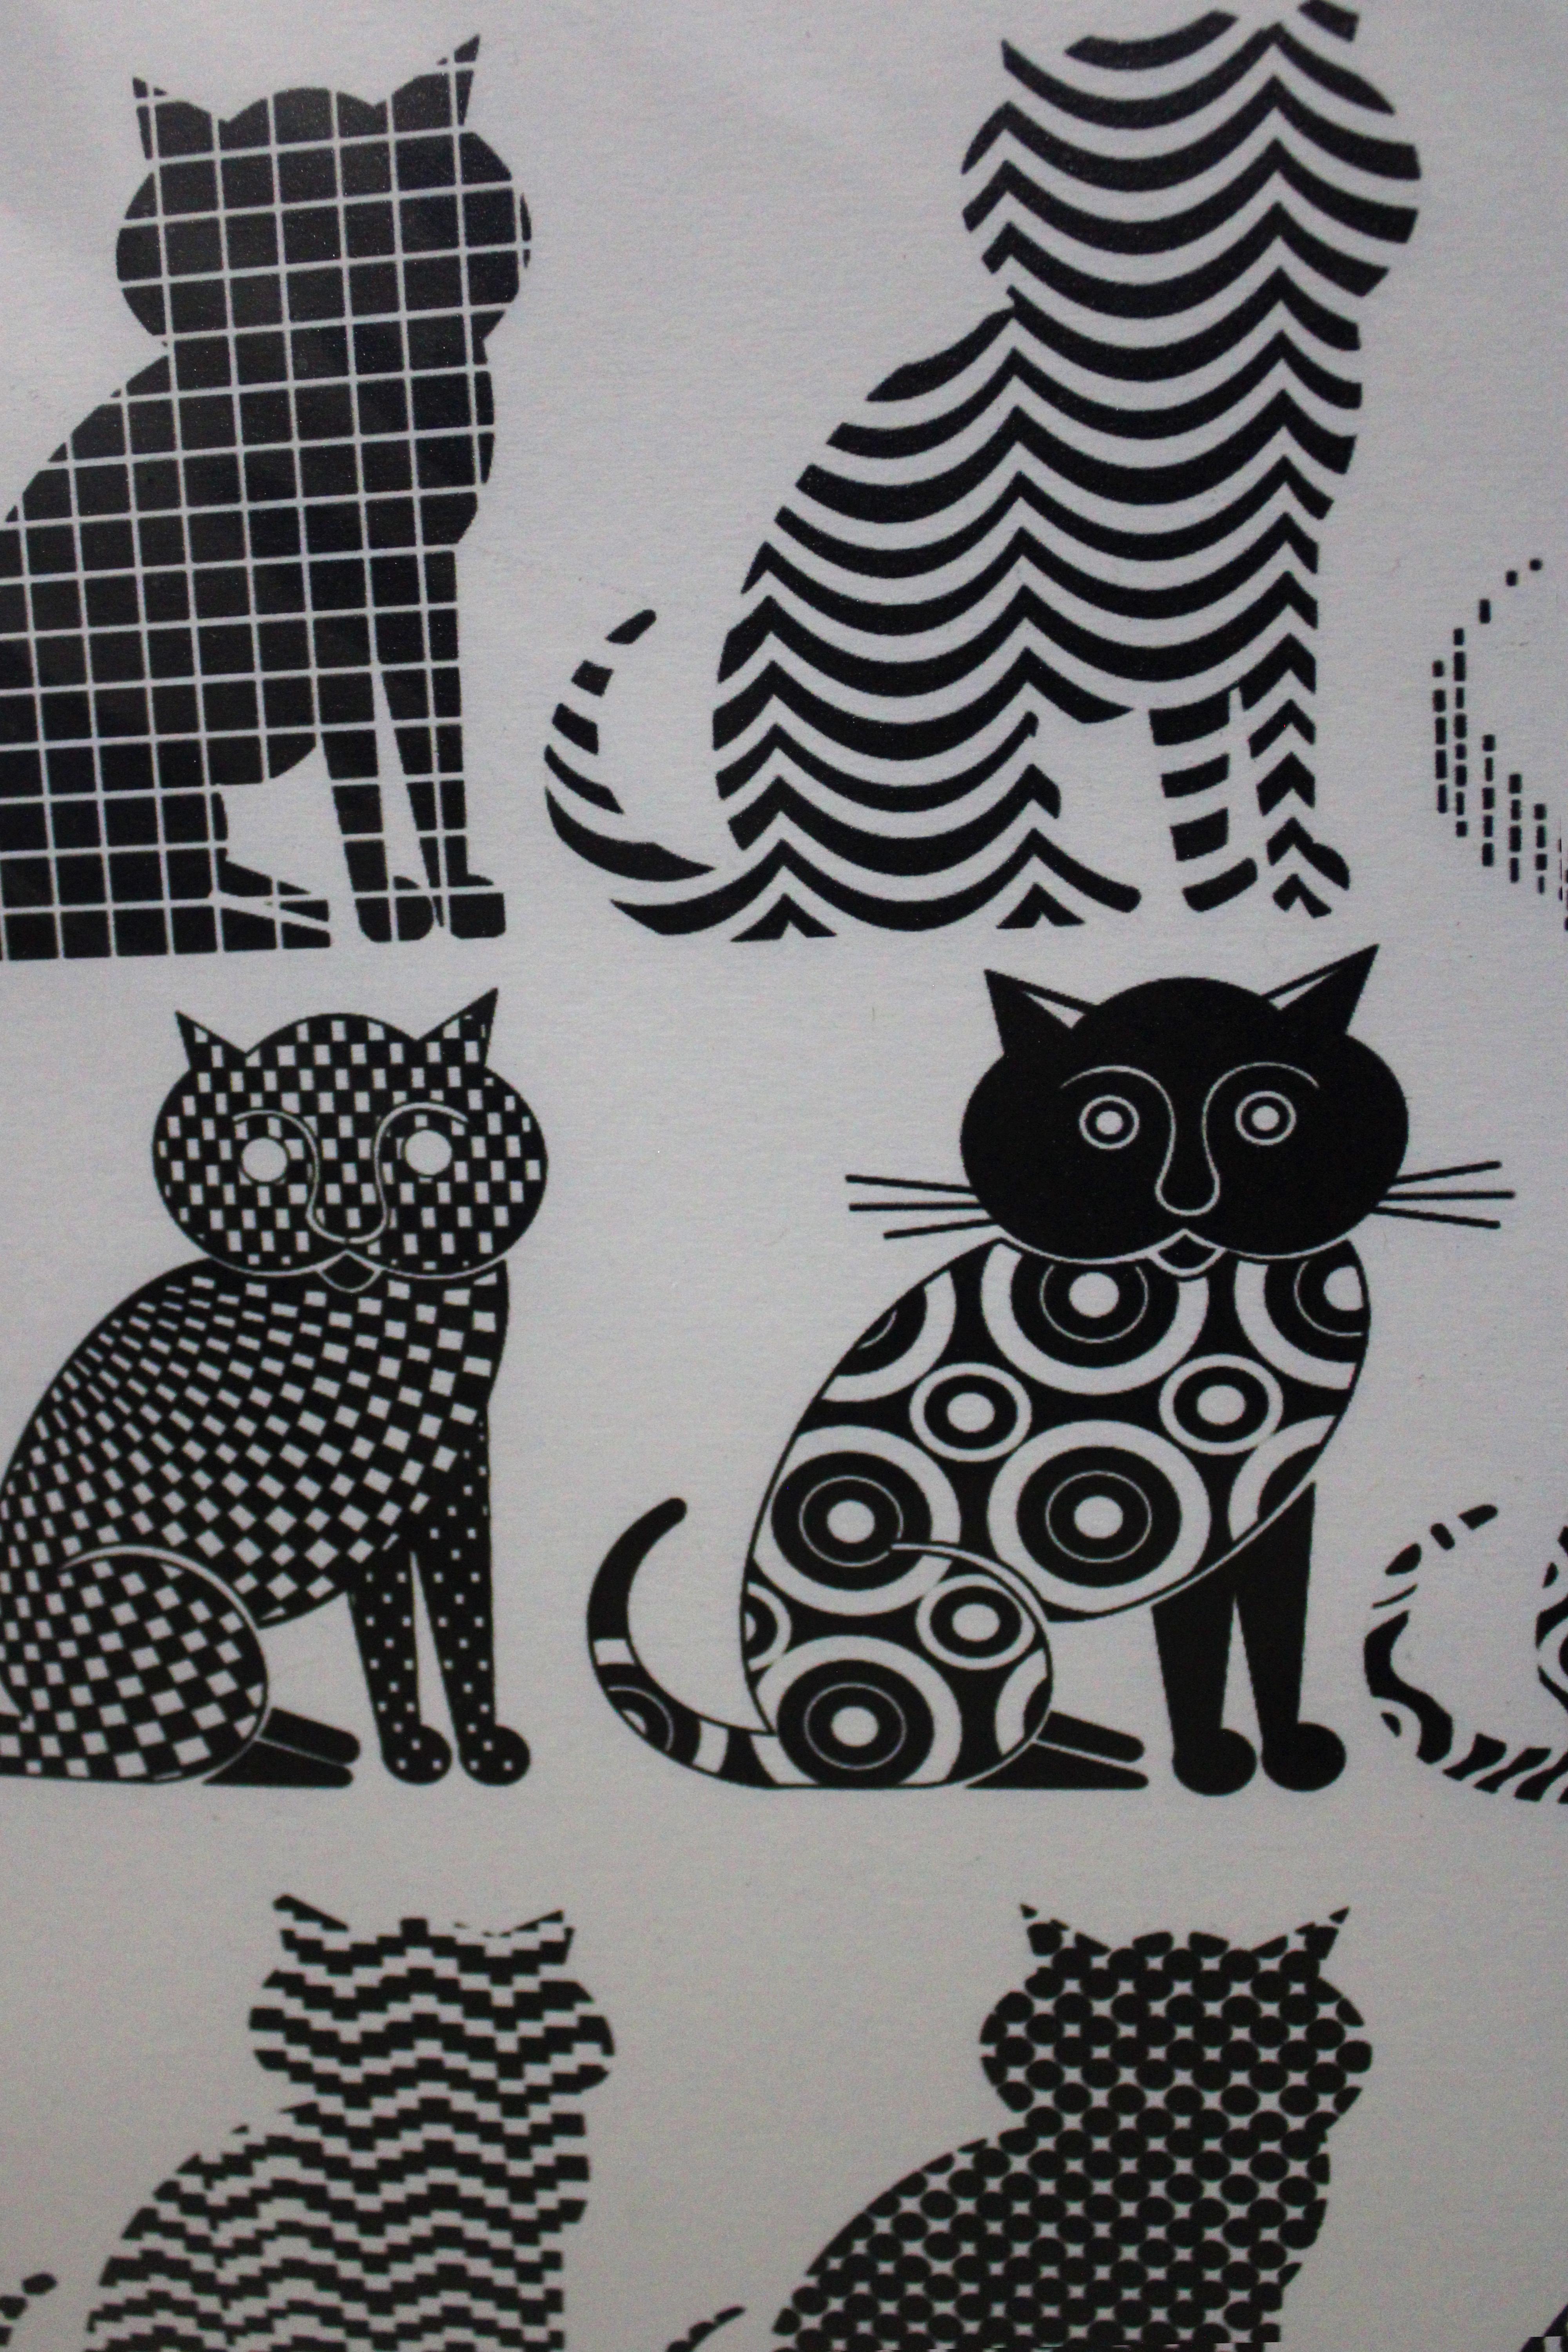 Katzen aller Nationen vereinigt euch! (Zeitgenössisch), Print, von Pedro Friedeberg